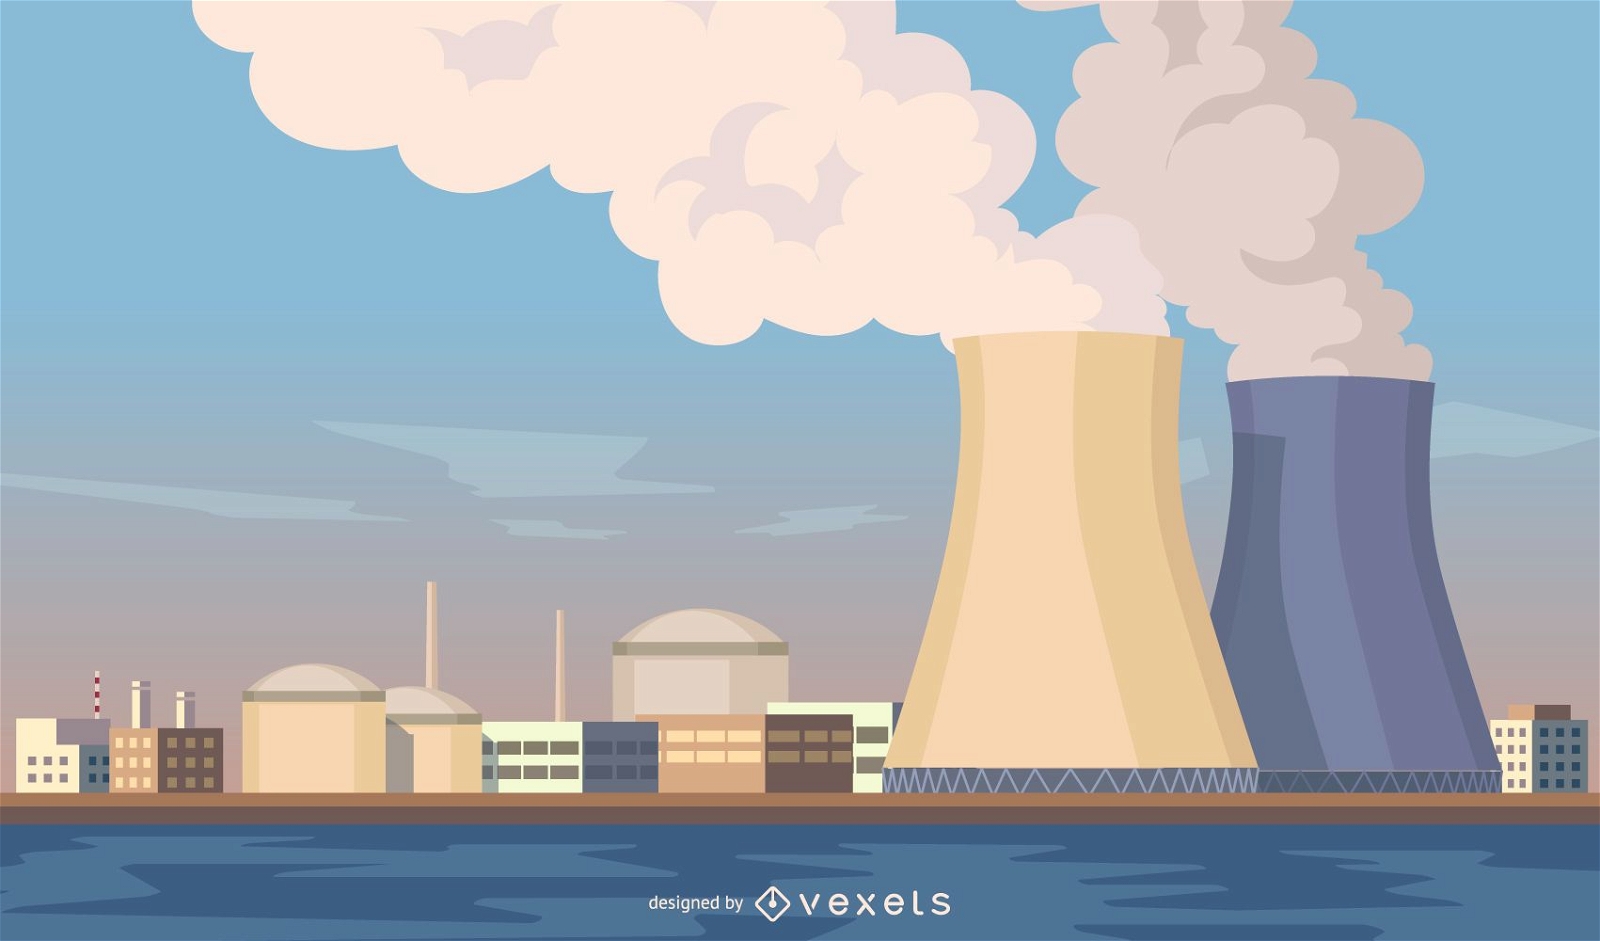 Paisaje urbano con ilustraci?n de plantas nucleares